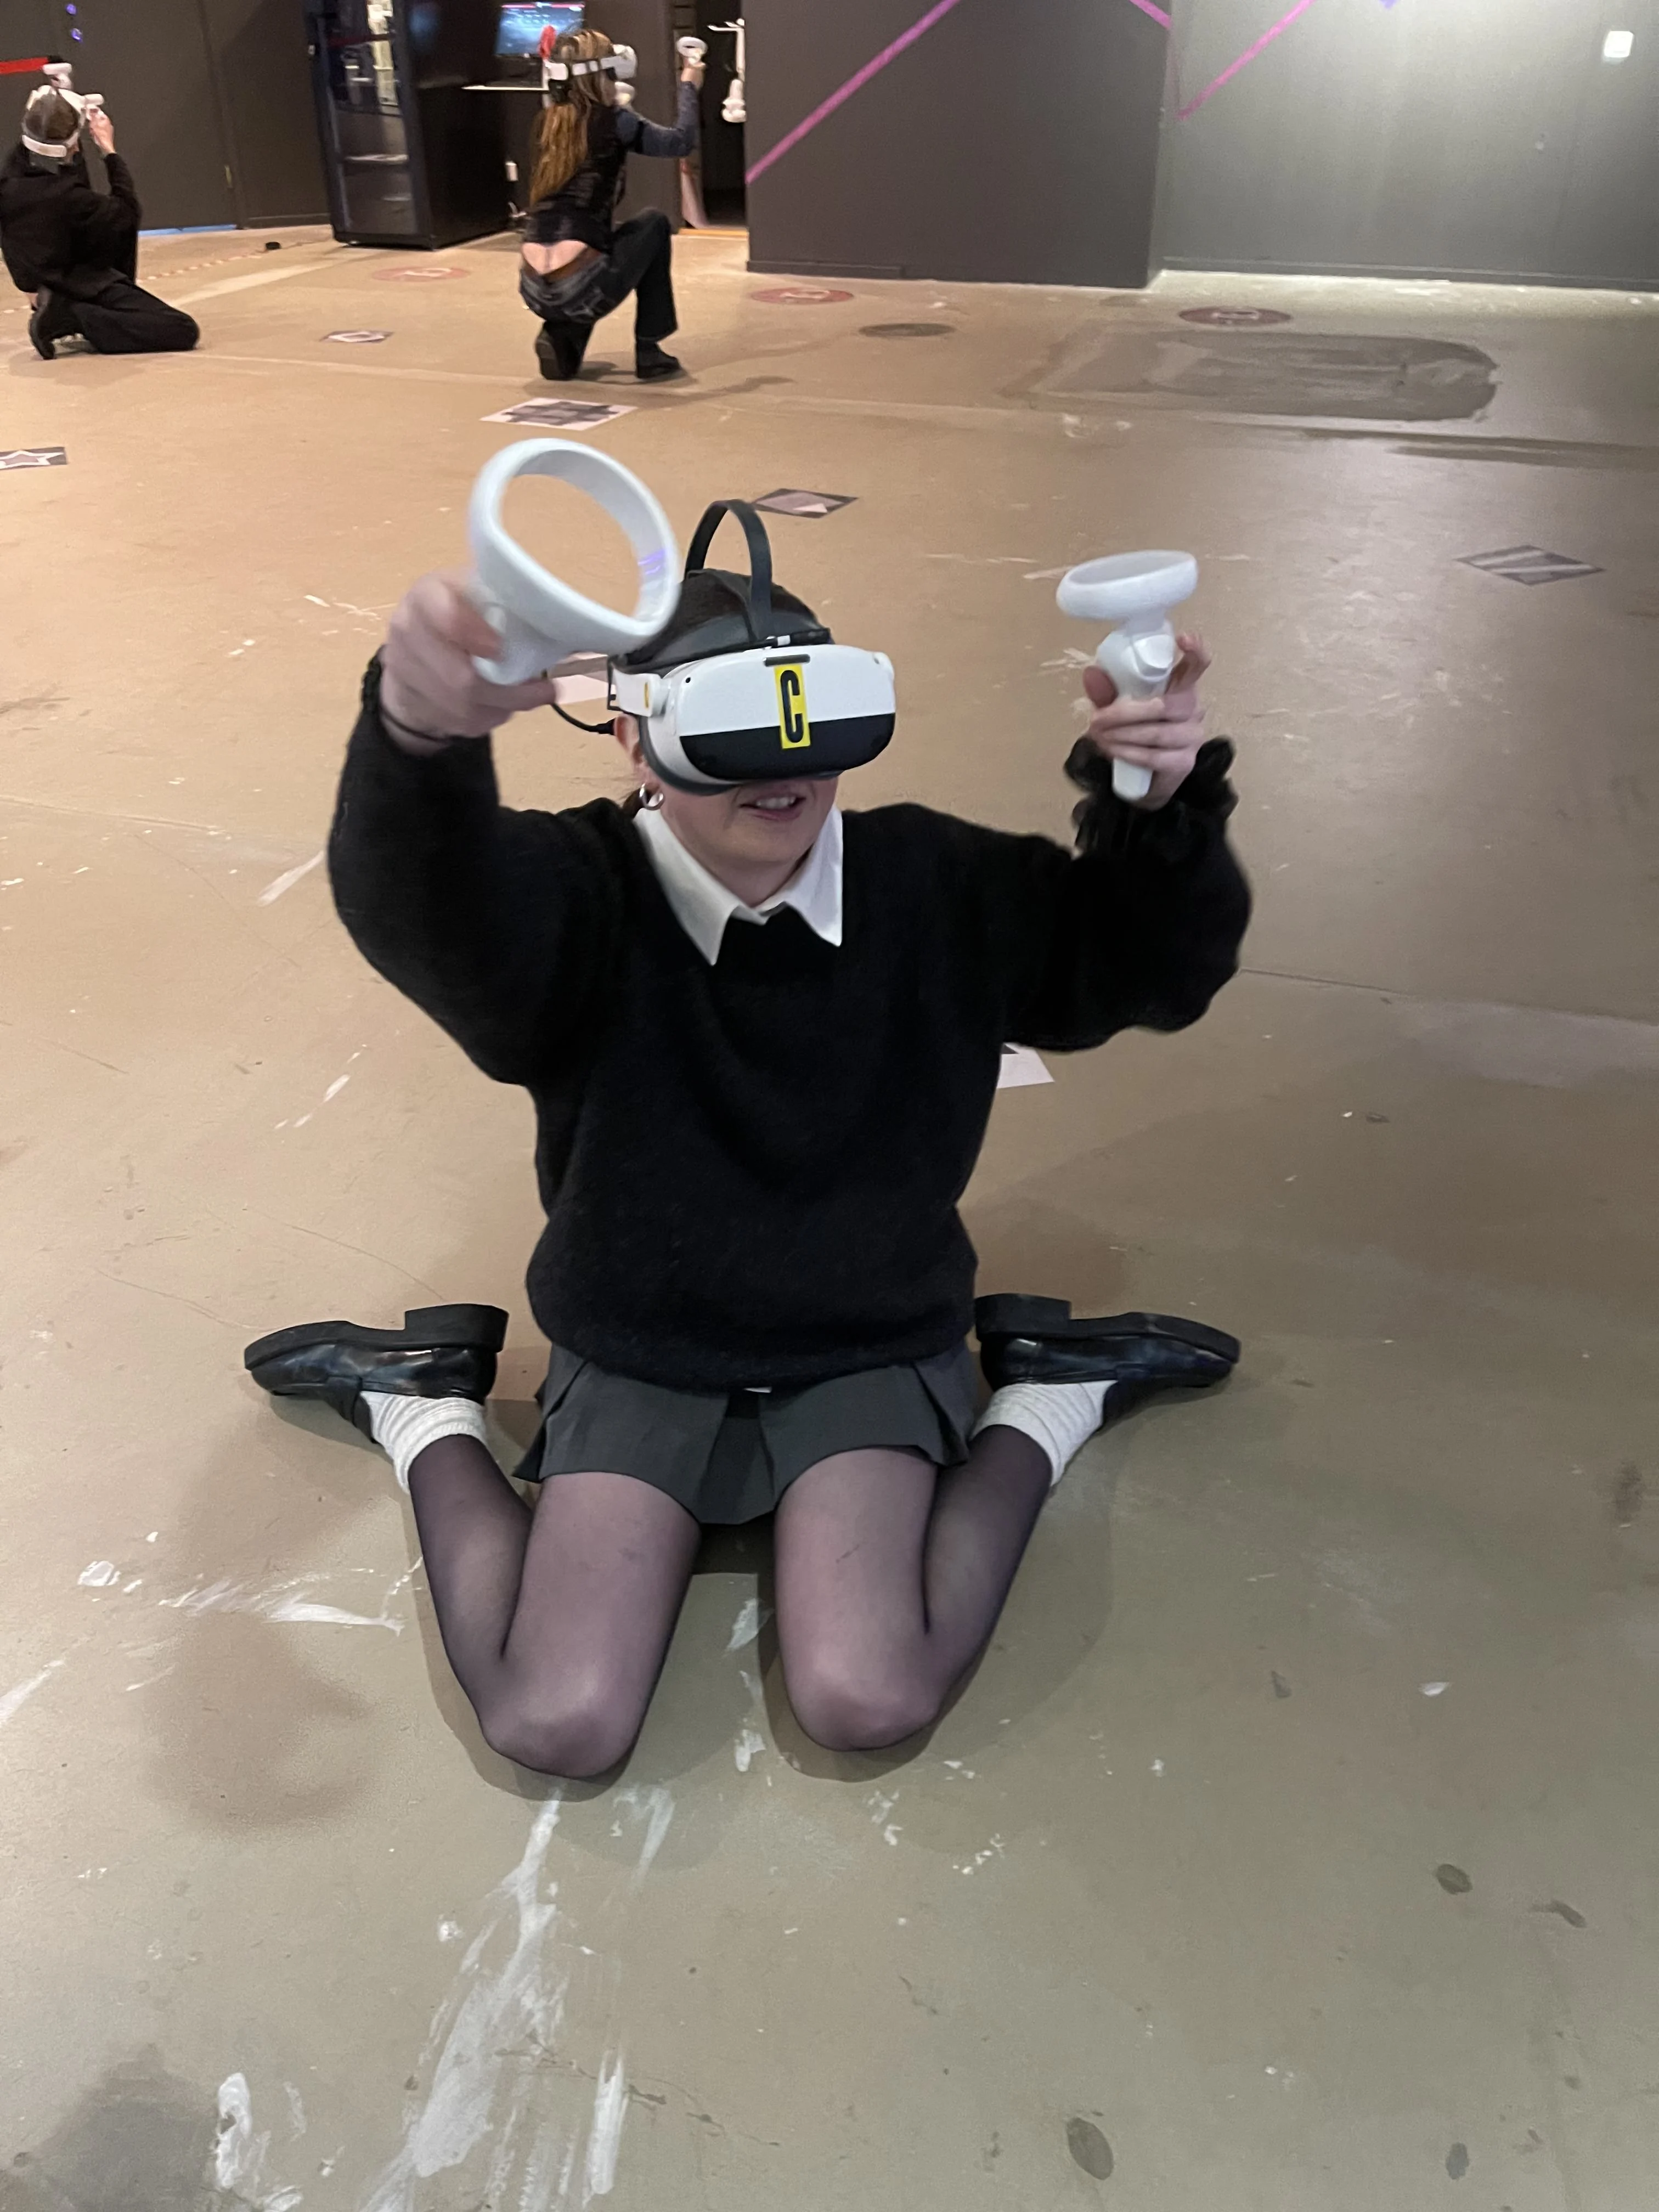 Pige spiller Virtual Reality-spil hos That VR Thing i Malmø med både VR-briller og VR-håndtag.